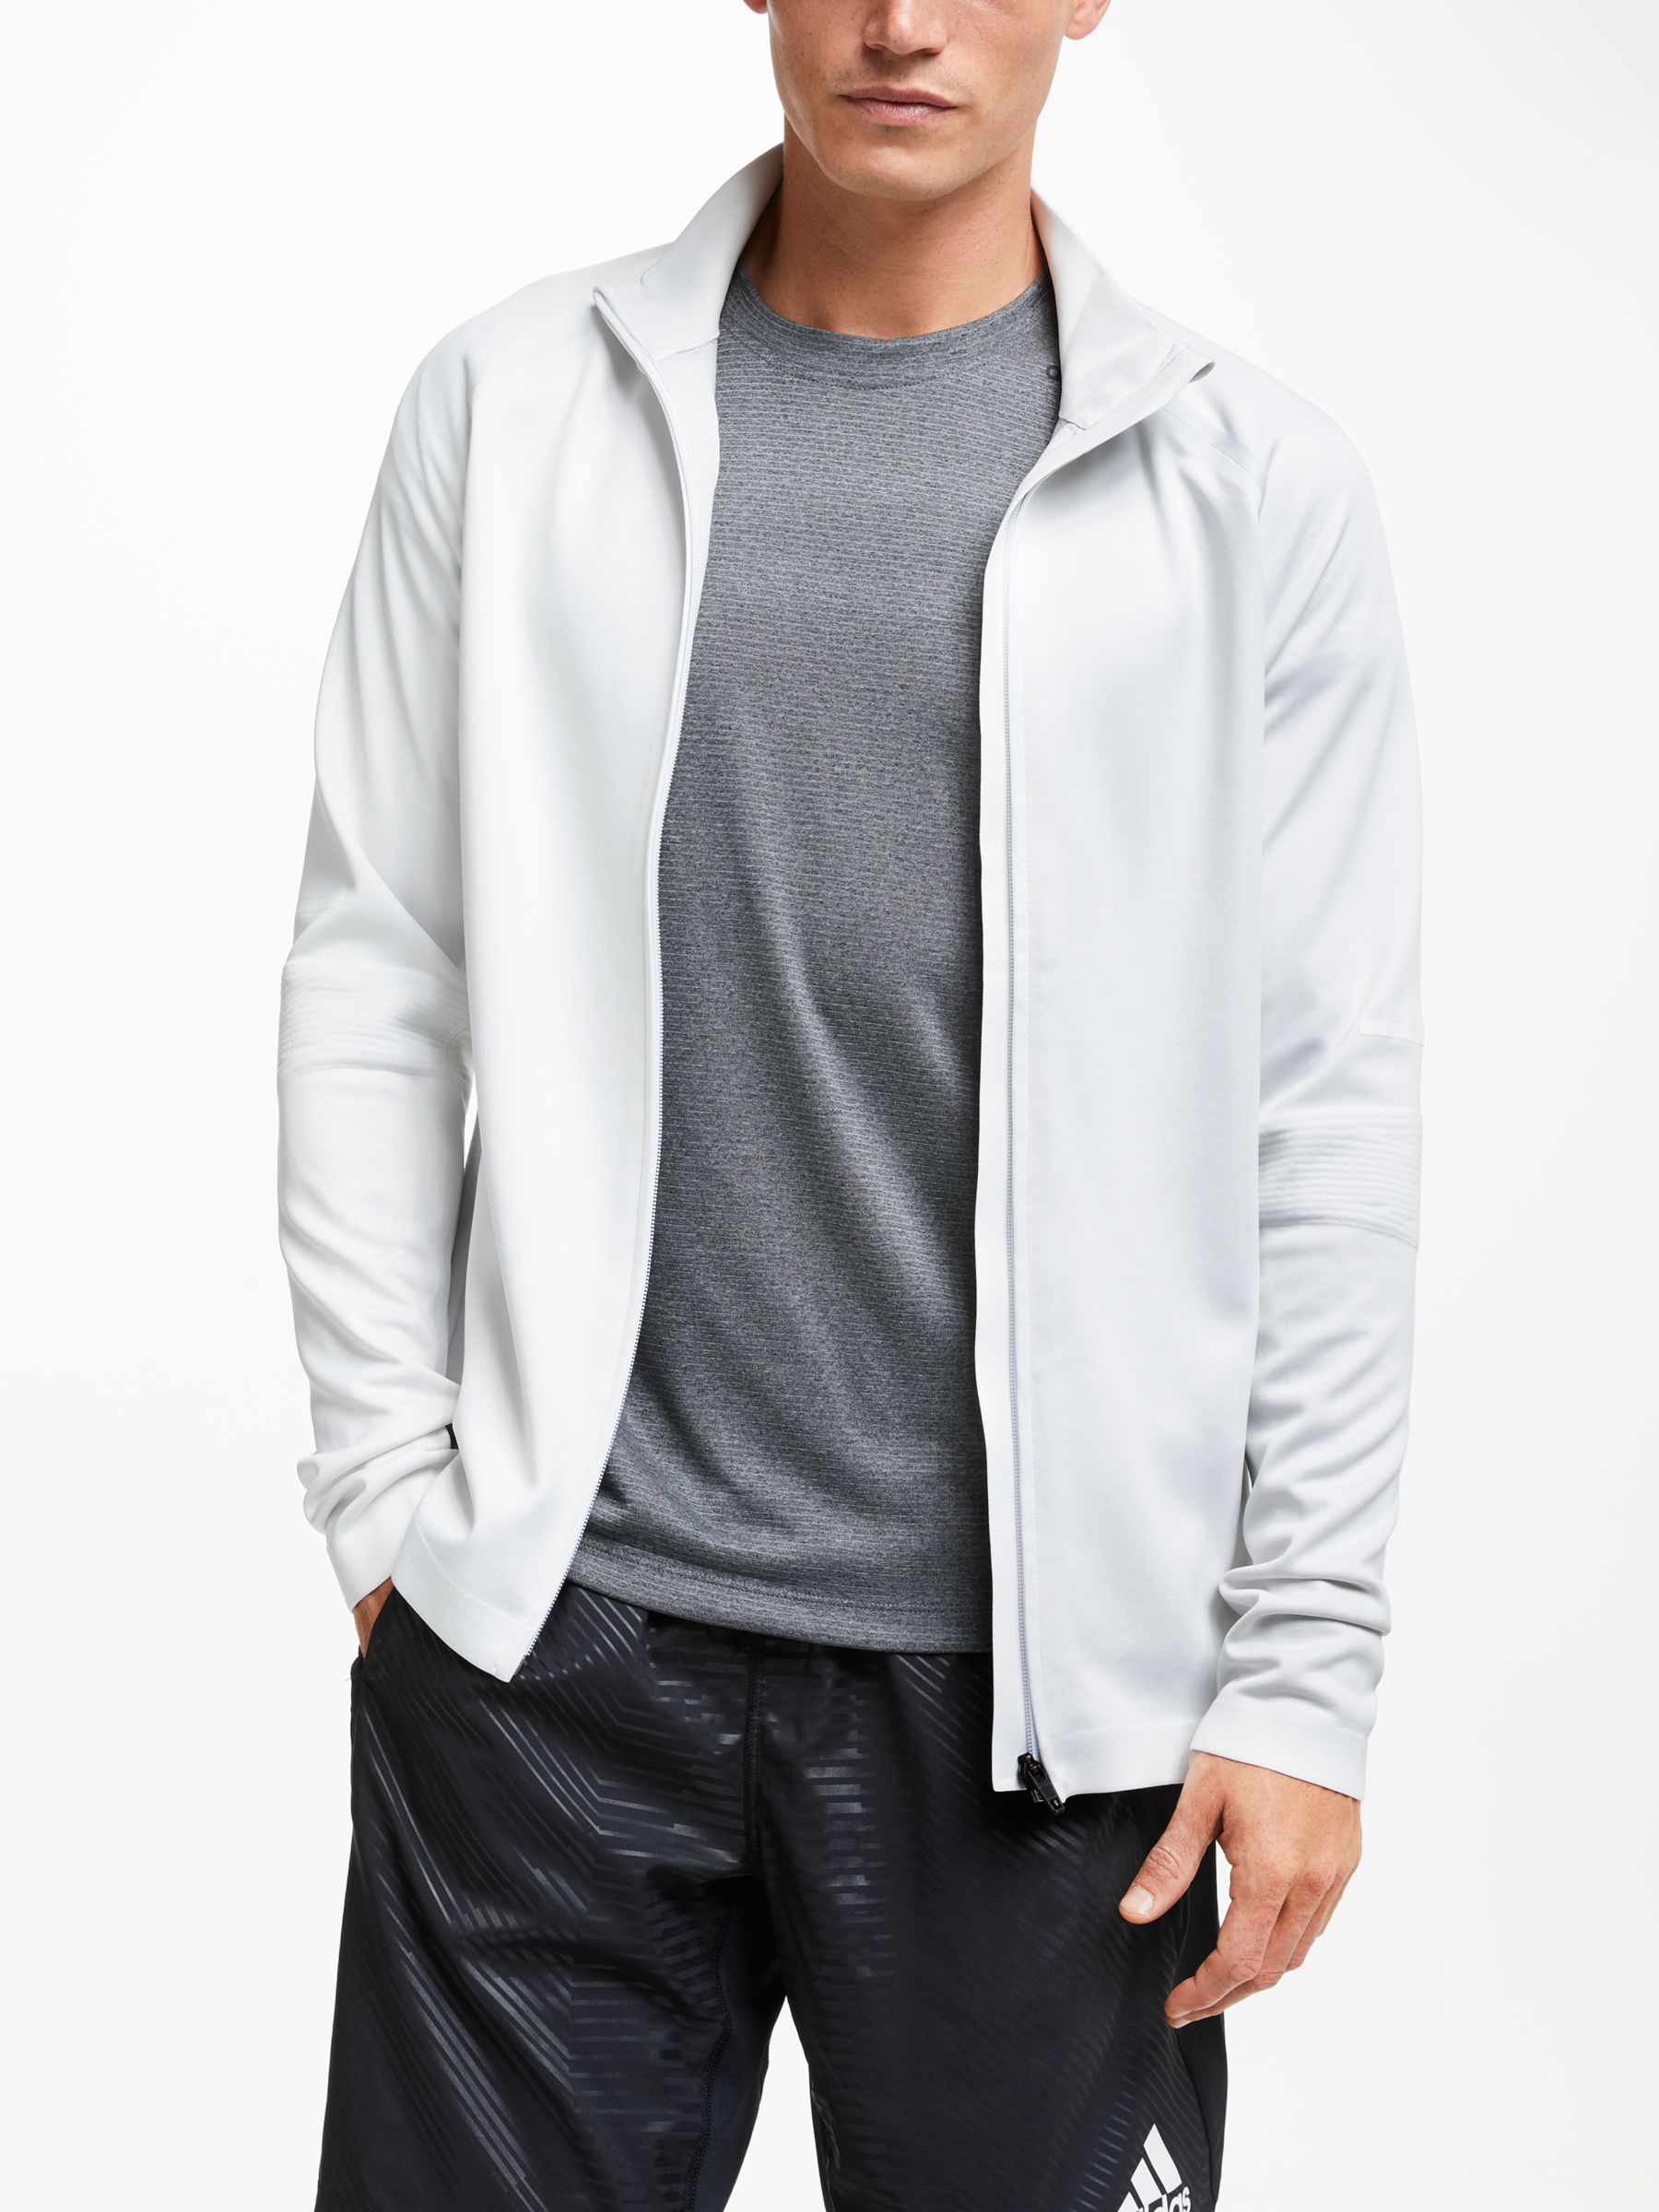 grey and white adidas jacket